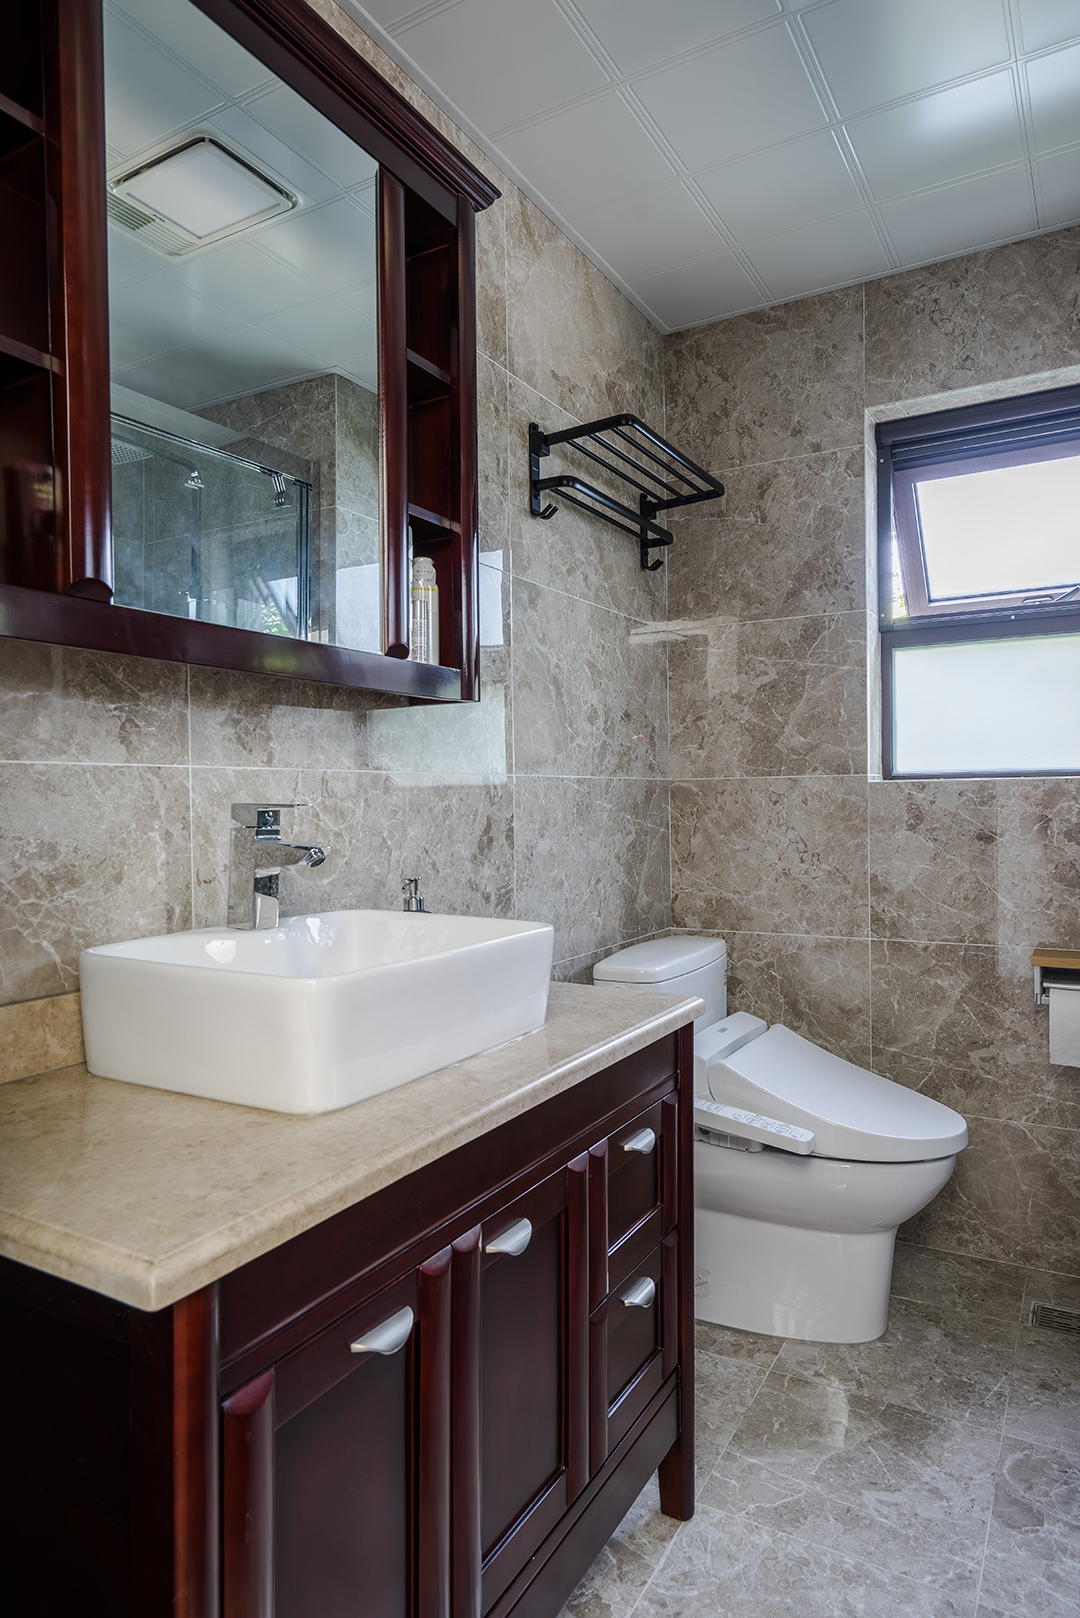 主卫主卫生间是私密性要求较高的空间。从原则上来讲卫生间是家居的附设单元，面积往往较小，其采光、通风的质量也常常被牺牲，以换取总体布局的平衡。 从环境上来讲，浴室应具备良好的通风、采光及取暖设备。在照明上采用了整体与局部结合的混合照明方式。浴室柜体现了新中式元素，智能马桶体现出客户对生活品质的要求，吊顶以简洁大方的浅色来搭配出完美的卫生间。
